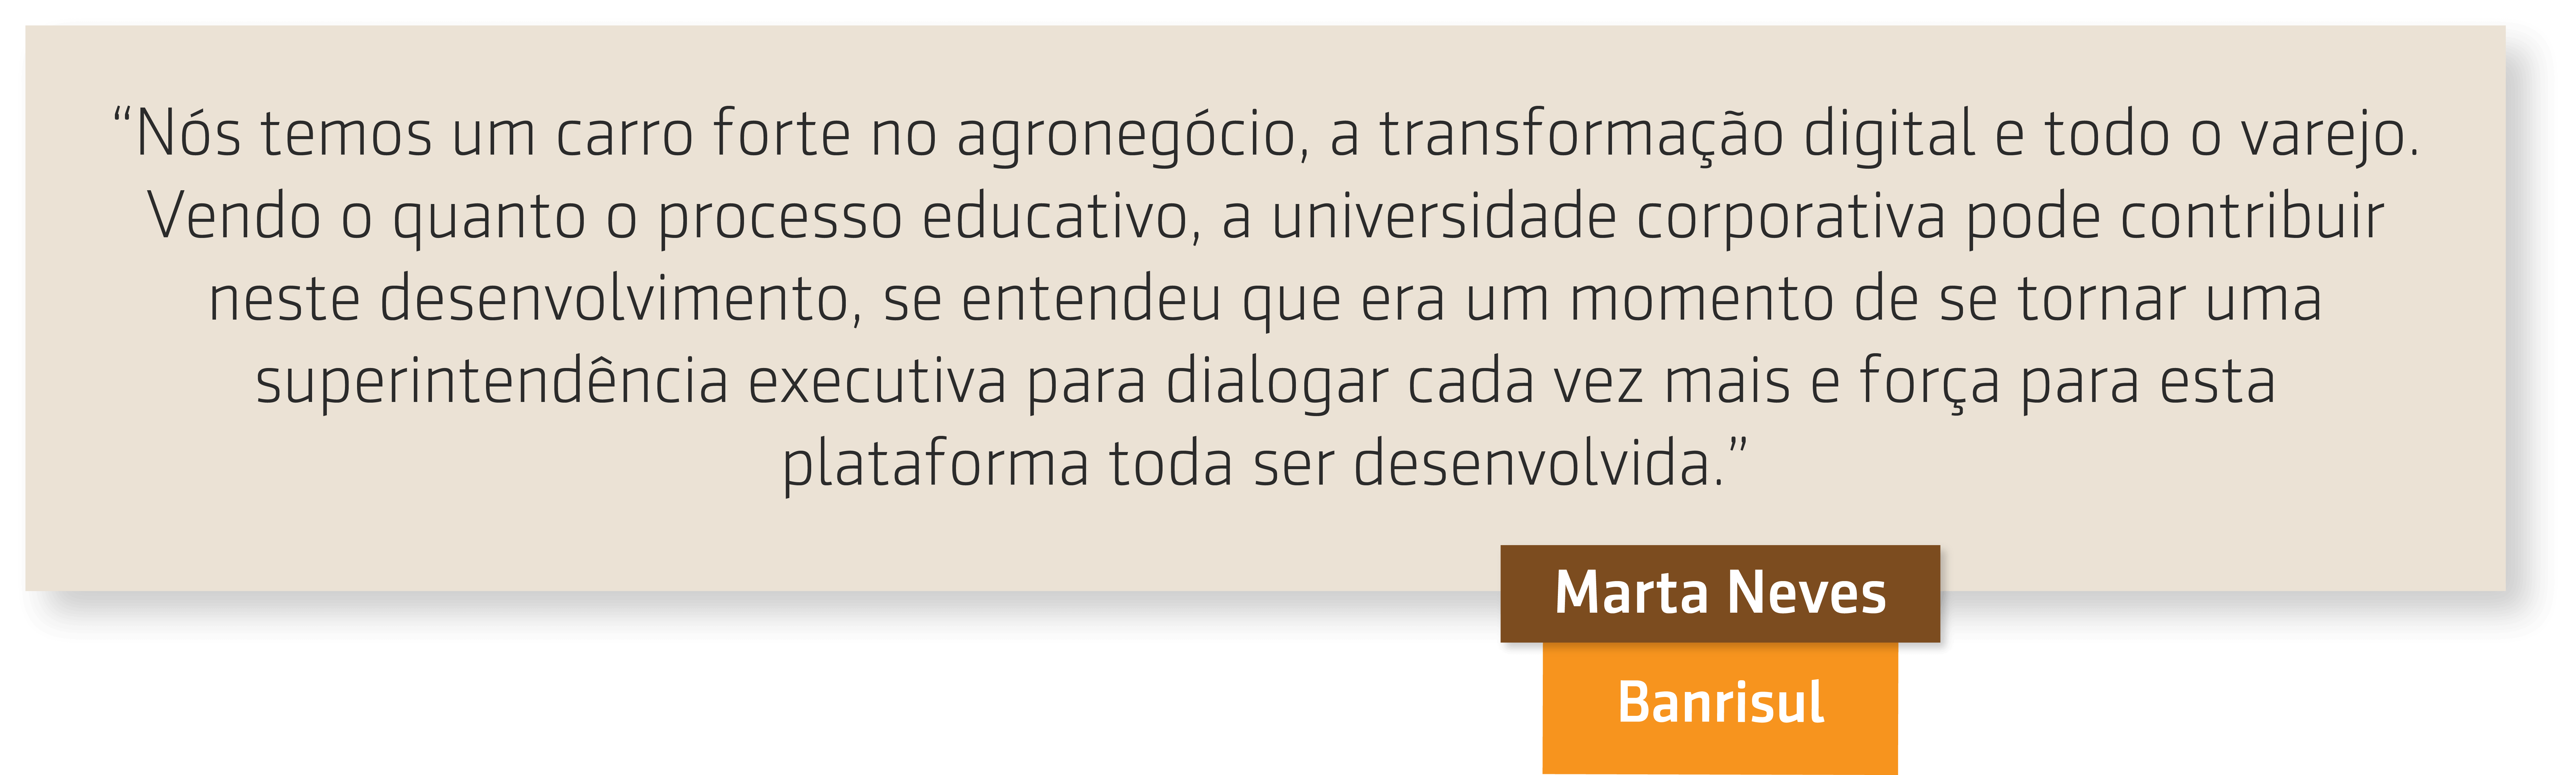 Resumo da entrevista de Wagner Cassimiro com Marta Neves do Banrisul sobre Universidade corporativa Banrisul 